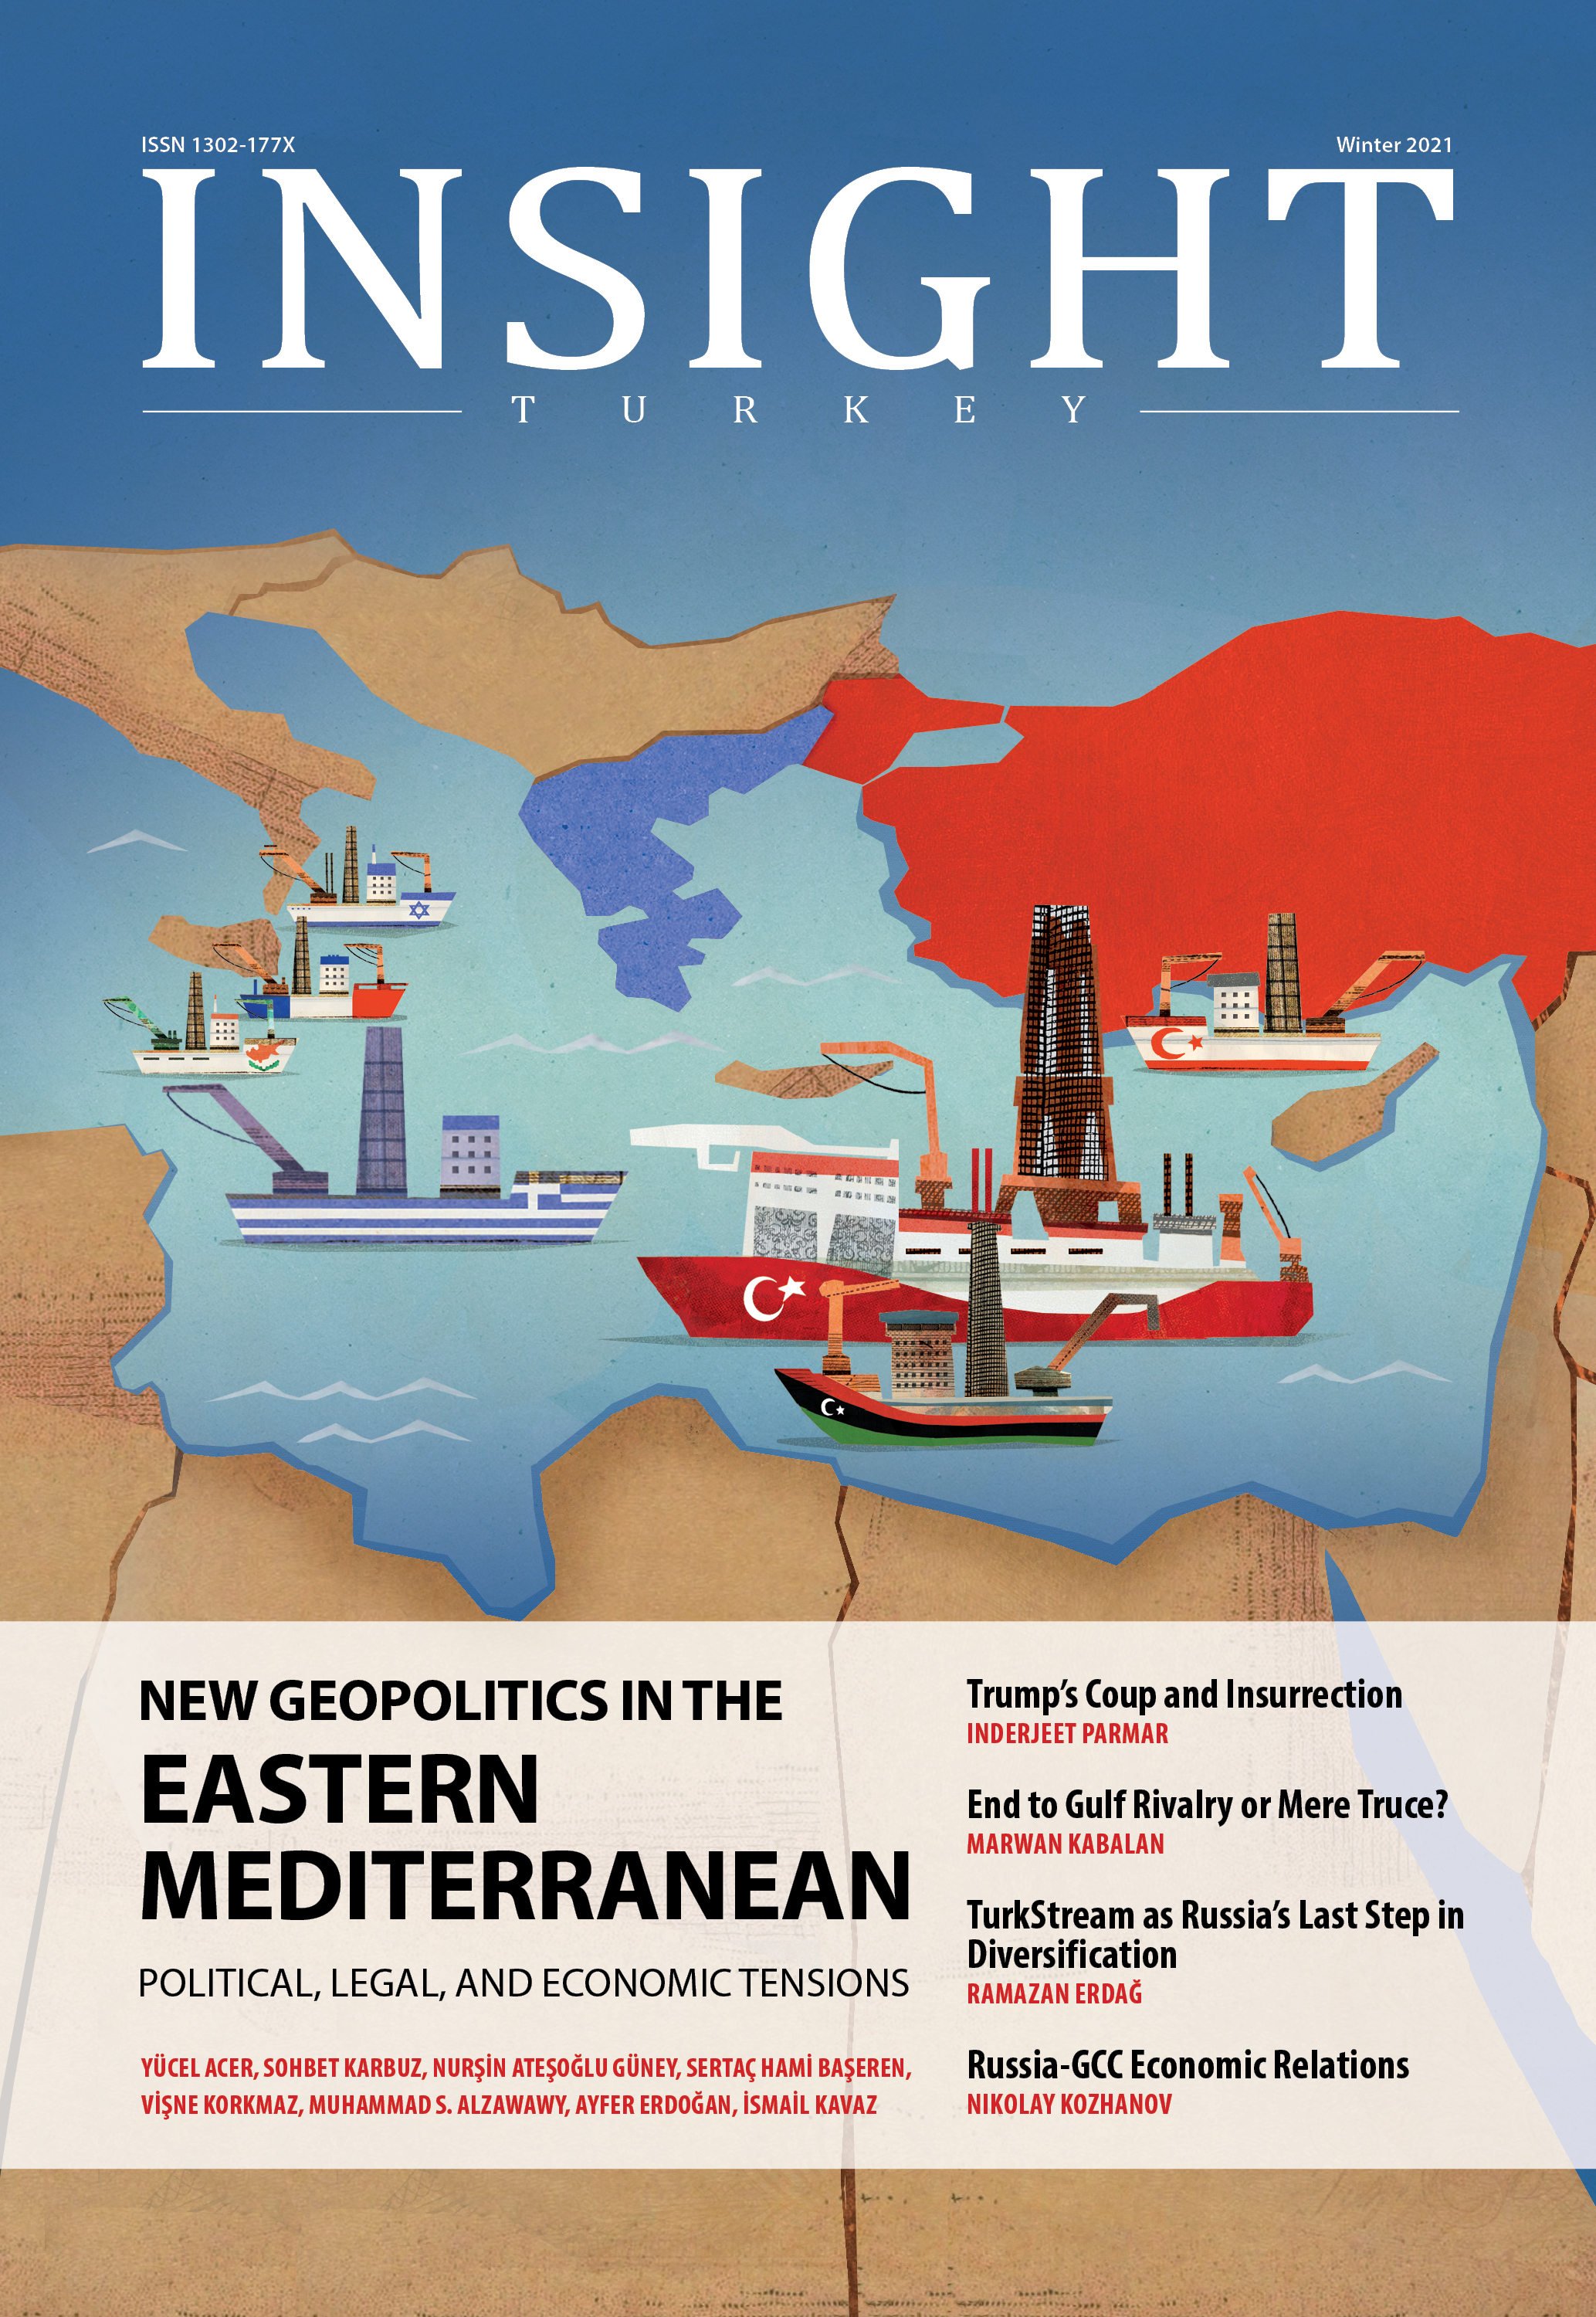 New Geopolitics in the Eastern Mediterranean